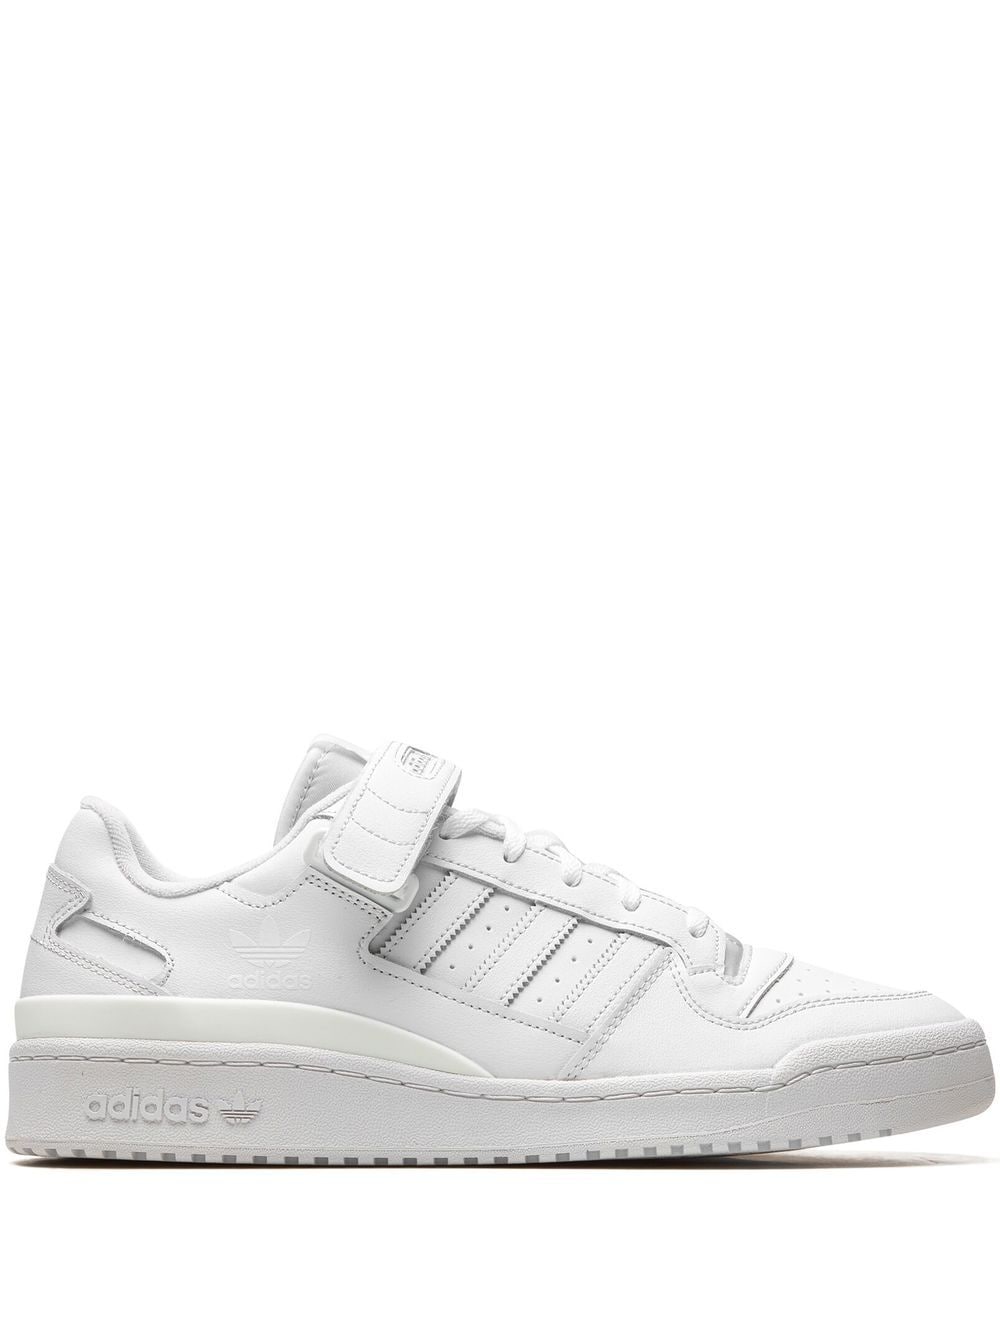 Adidas Originals Forum Low Sneakers In White